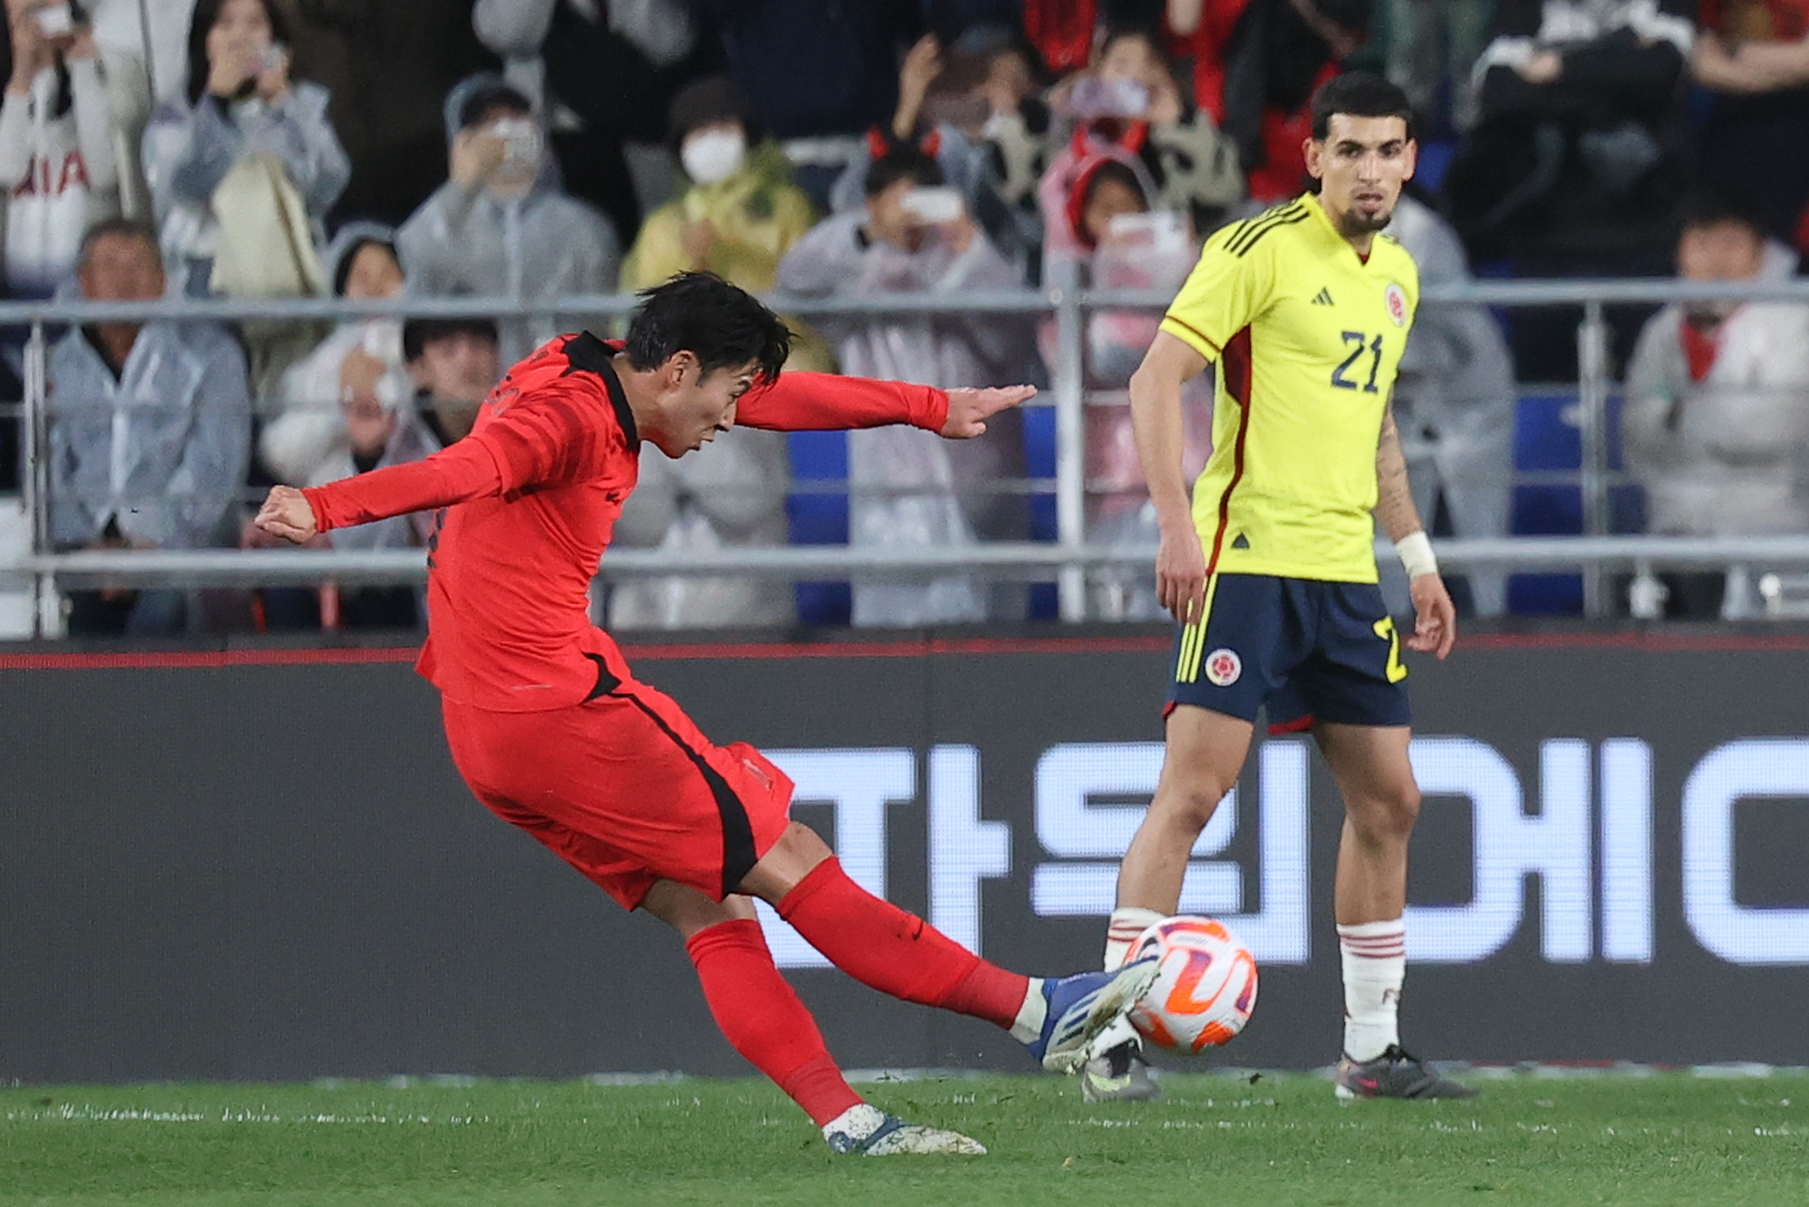 손흥민이 지난달 24일 울산 문수축구경기장에서 열린 콜롬비아와의 평가전에서 프리킥으로 두 번째 골을 넣고 있다. [울산 연합뉴스]